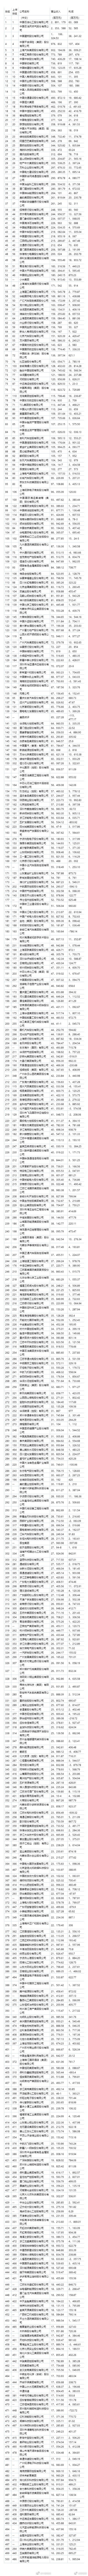 财富中国500强榜单是怎么回事-财富中国500强榜单详情介绍